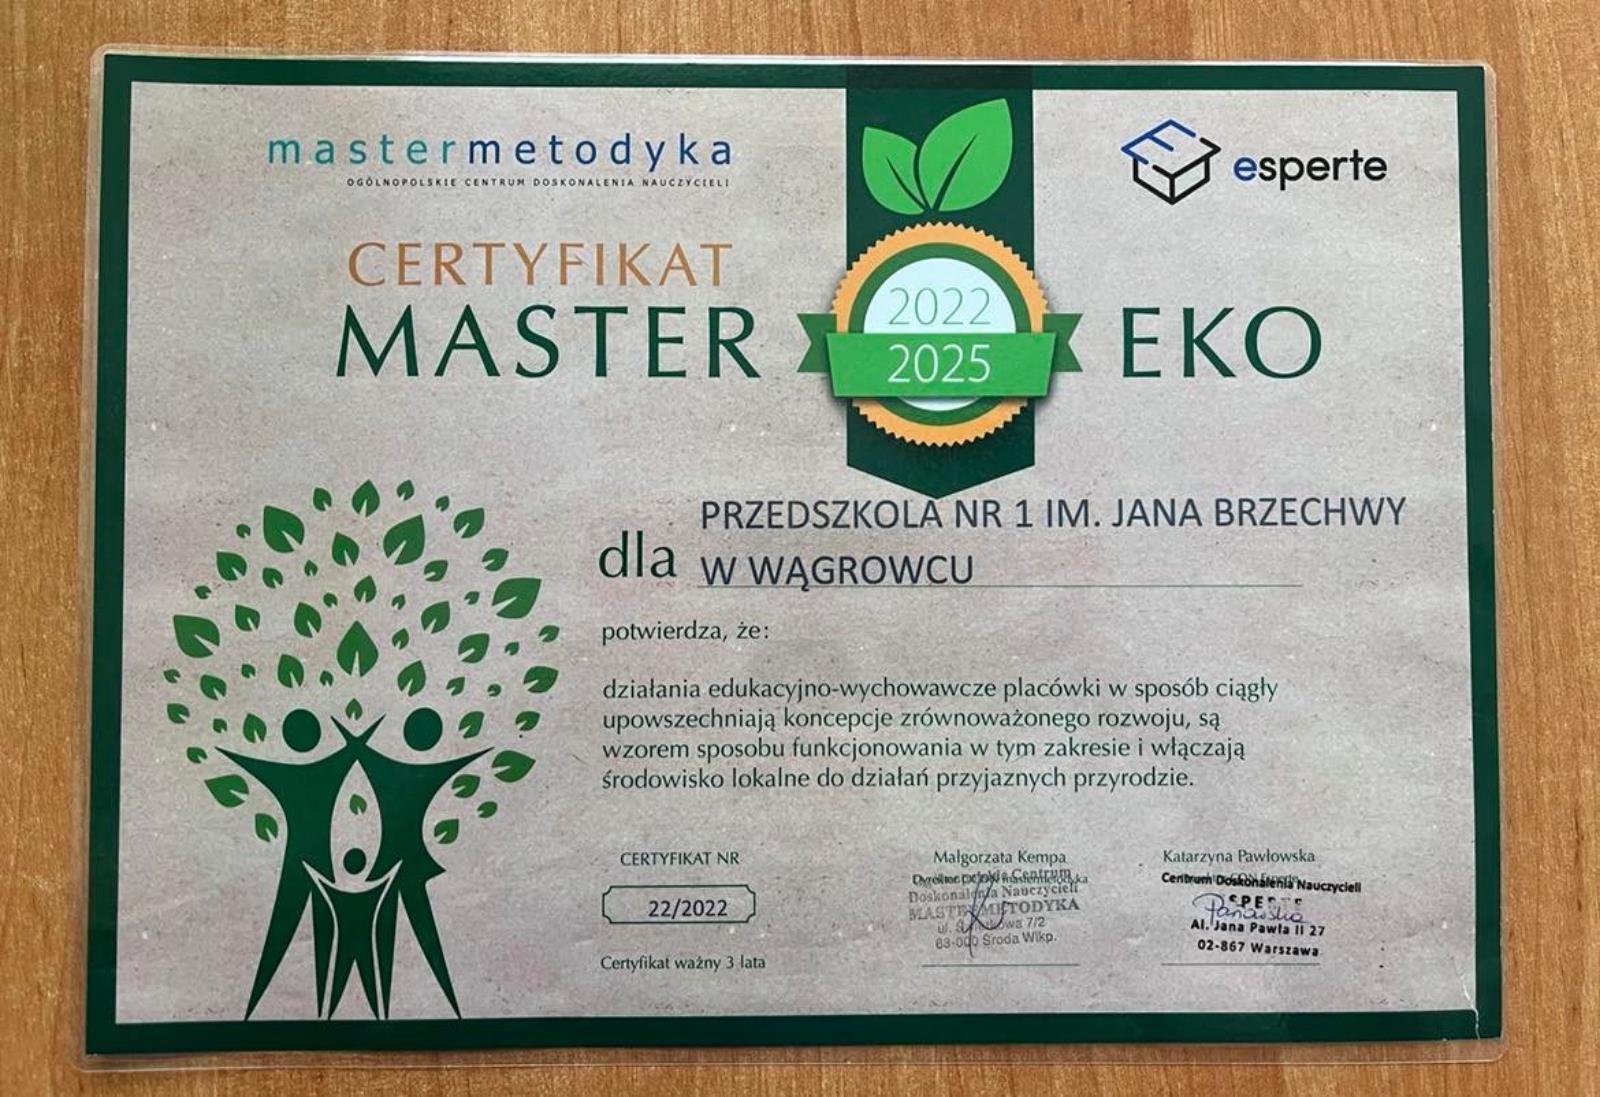 Zdjęcie z wydarzenia: Zdobyliśmy certyfikat Master Eco na kolejne 3 lata! - przedstawia certyfikat